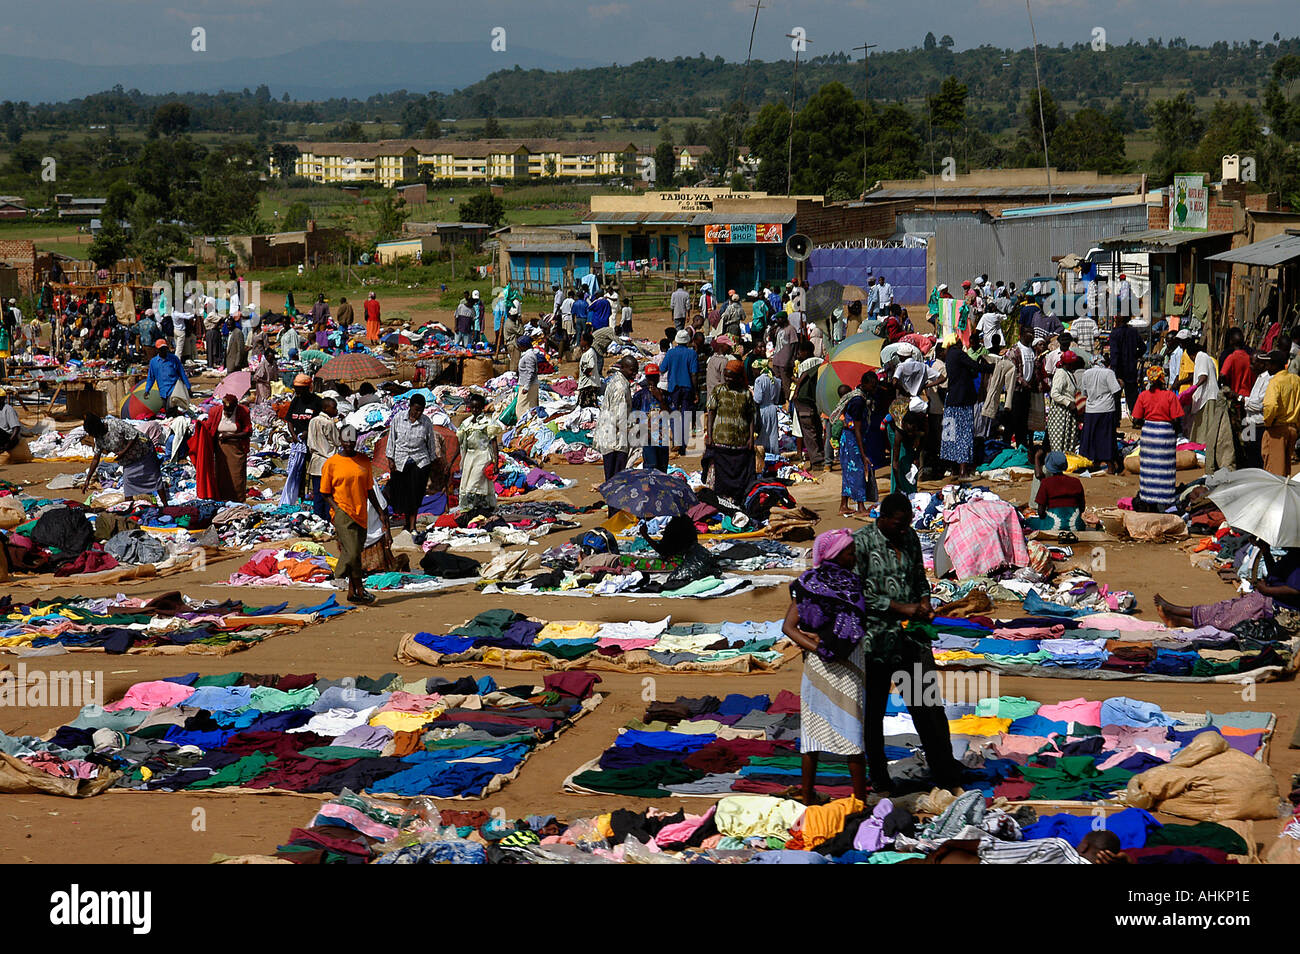 Kenya Tanzania frontier clothes attire dress market Stock Photo